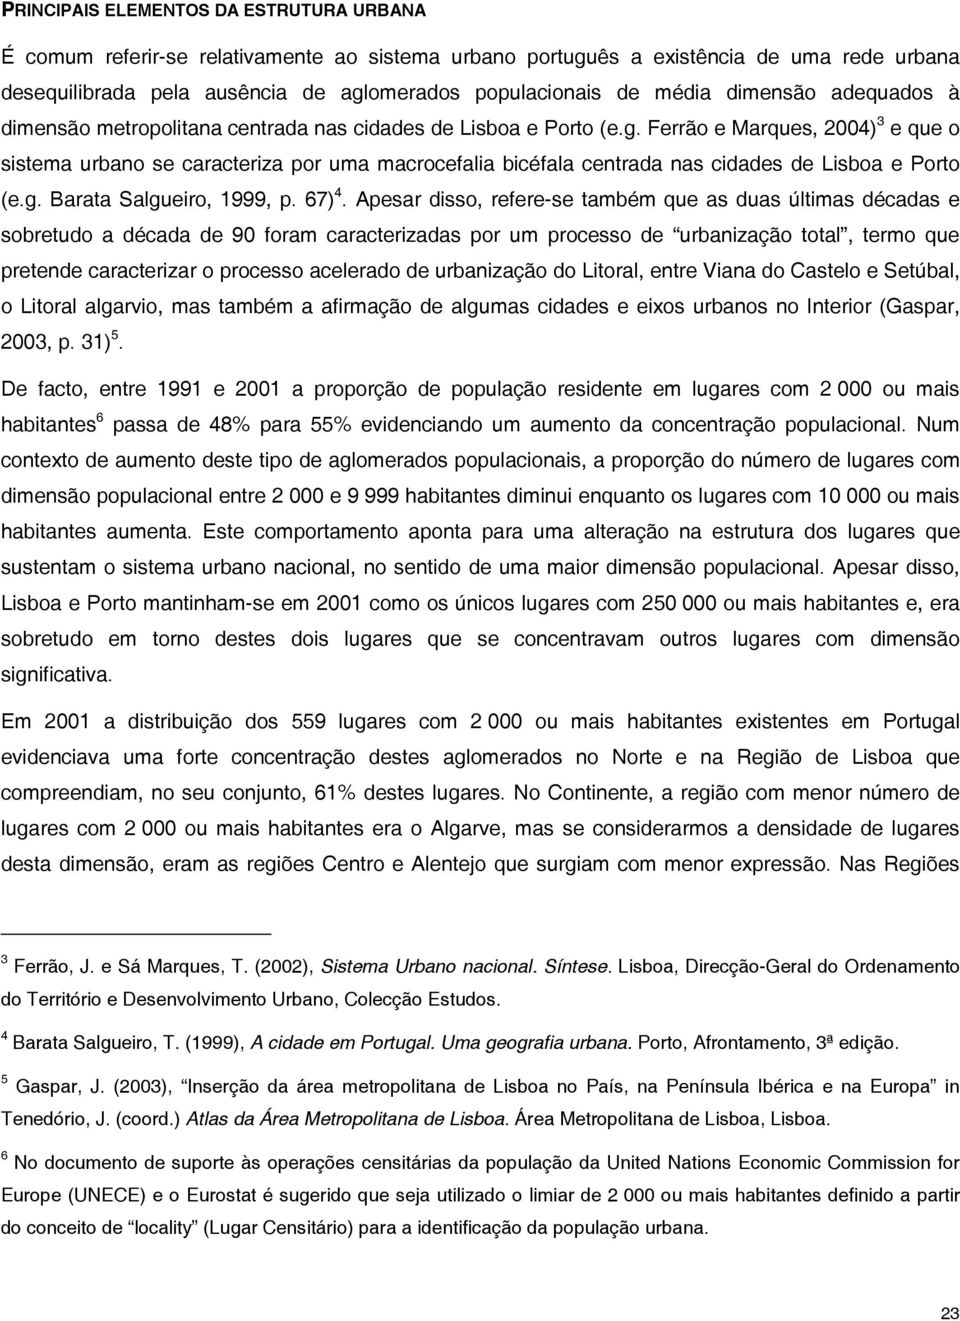 Ferrão e Marques, 2004) 3 e que o sistema urbano se caracteriza por uma macrocefalia bicéfala centrada nas cidades de Lisboa e Porto (e.g. Barata Salgueiro, 1999, p. 67) 4.